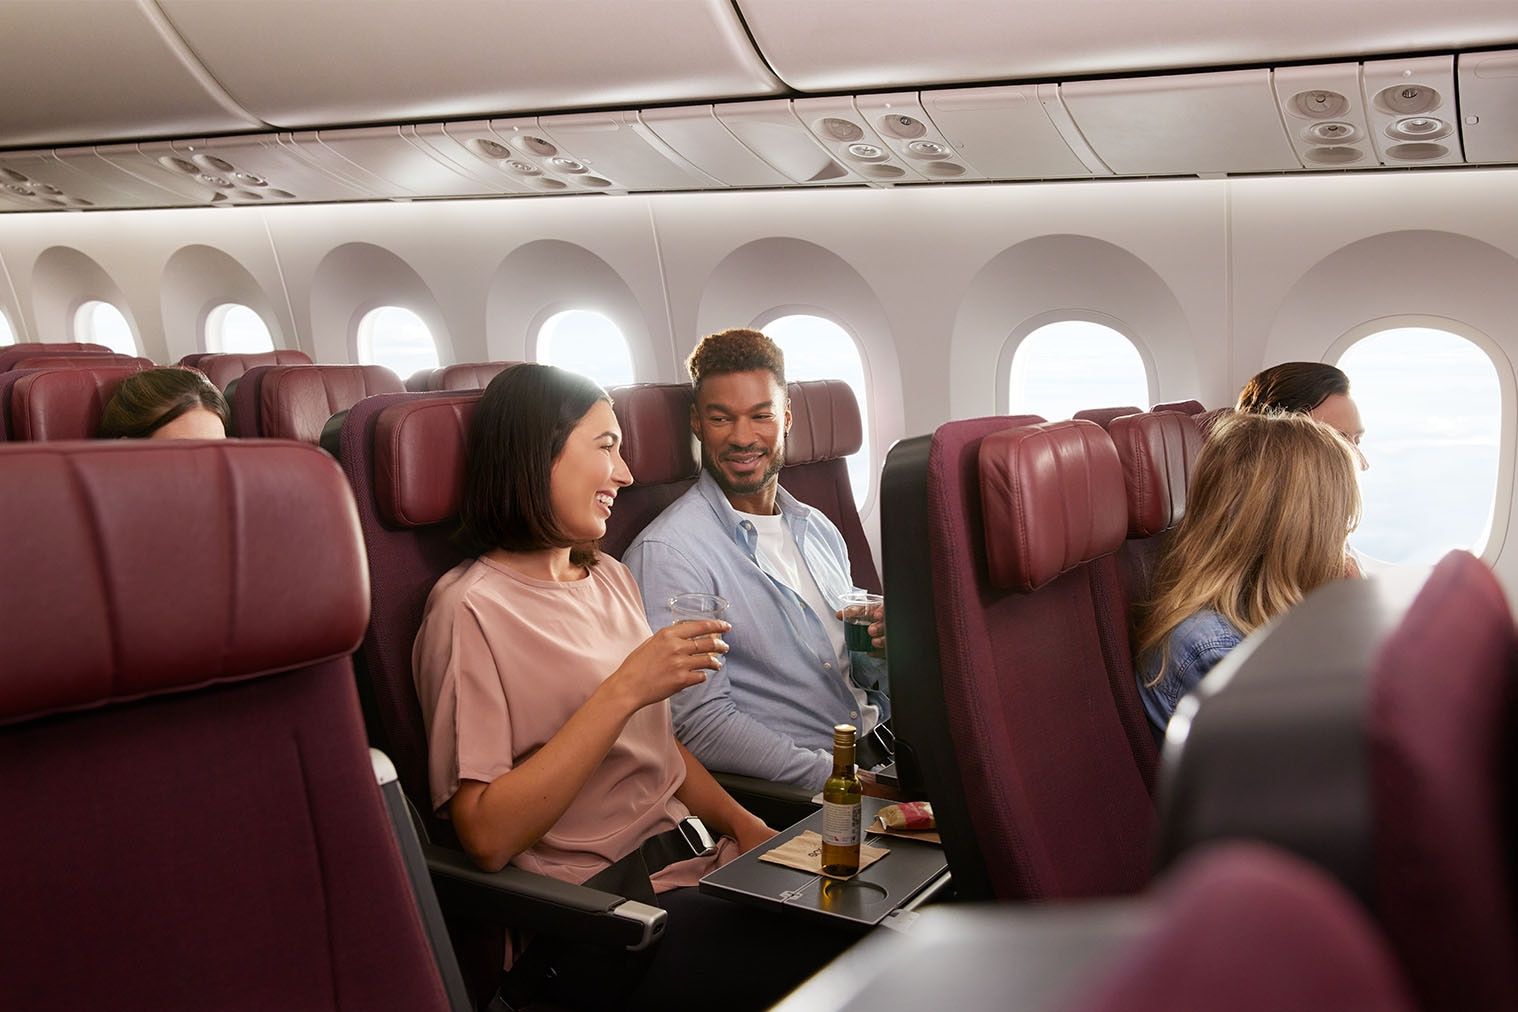 Qantas economy cabin with passengers